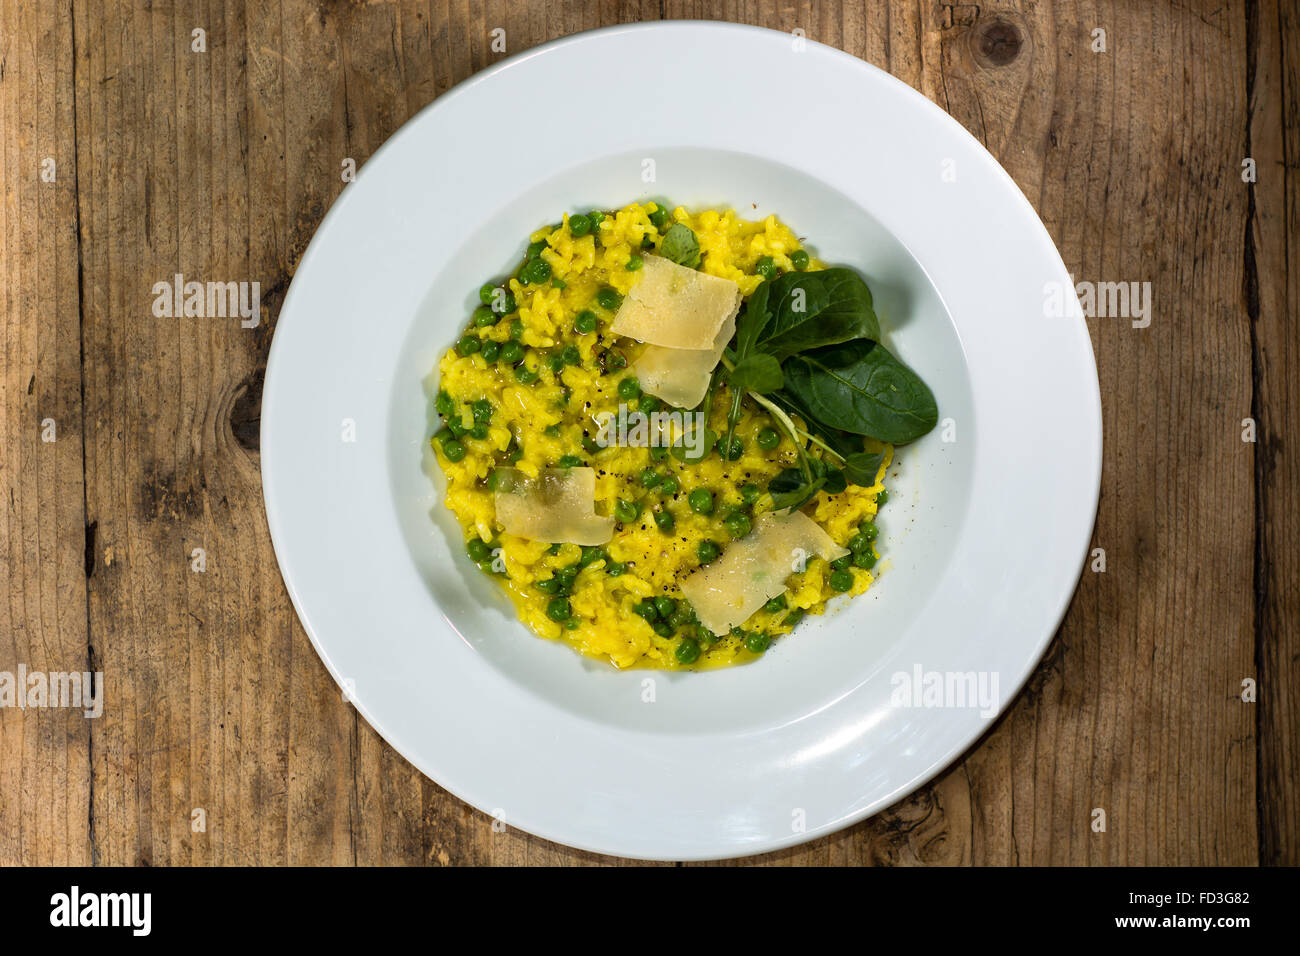 Lauch, Garten Erbsen und Safran-Risotto auf Teller. Französisches Restaurant, die Küche mit hellen gelben Reis Stockfoto